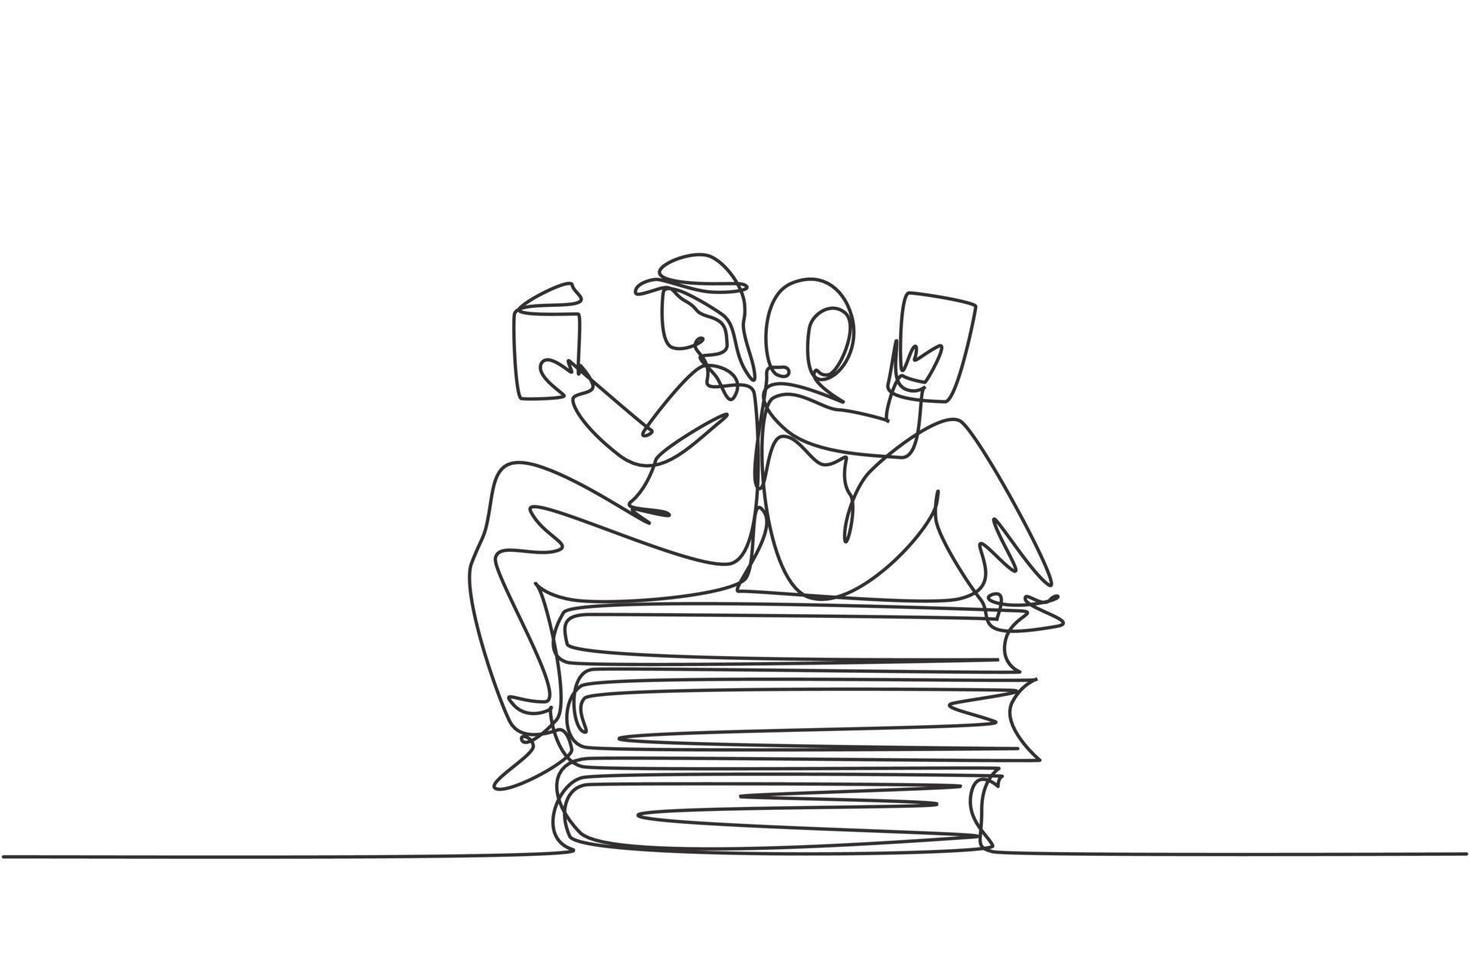 Single One Line Drawing arabische Studenten Frau und Mann lesen, lernen und sitzen auf großen Büchern. in der Bibliothek studieren. Literaturfans oder -liebhaber. durchgehende Linie zeichnen Design-Grafik-Vektor-Illustration vektor